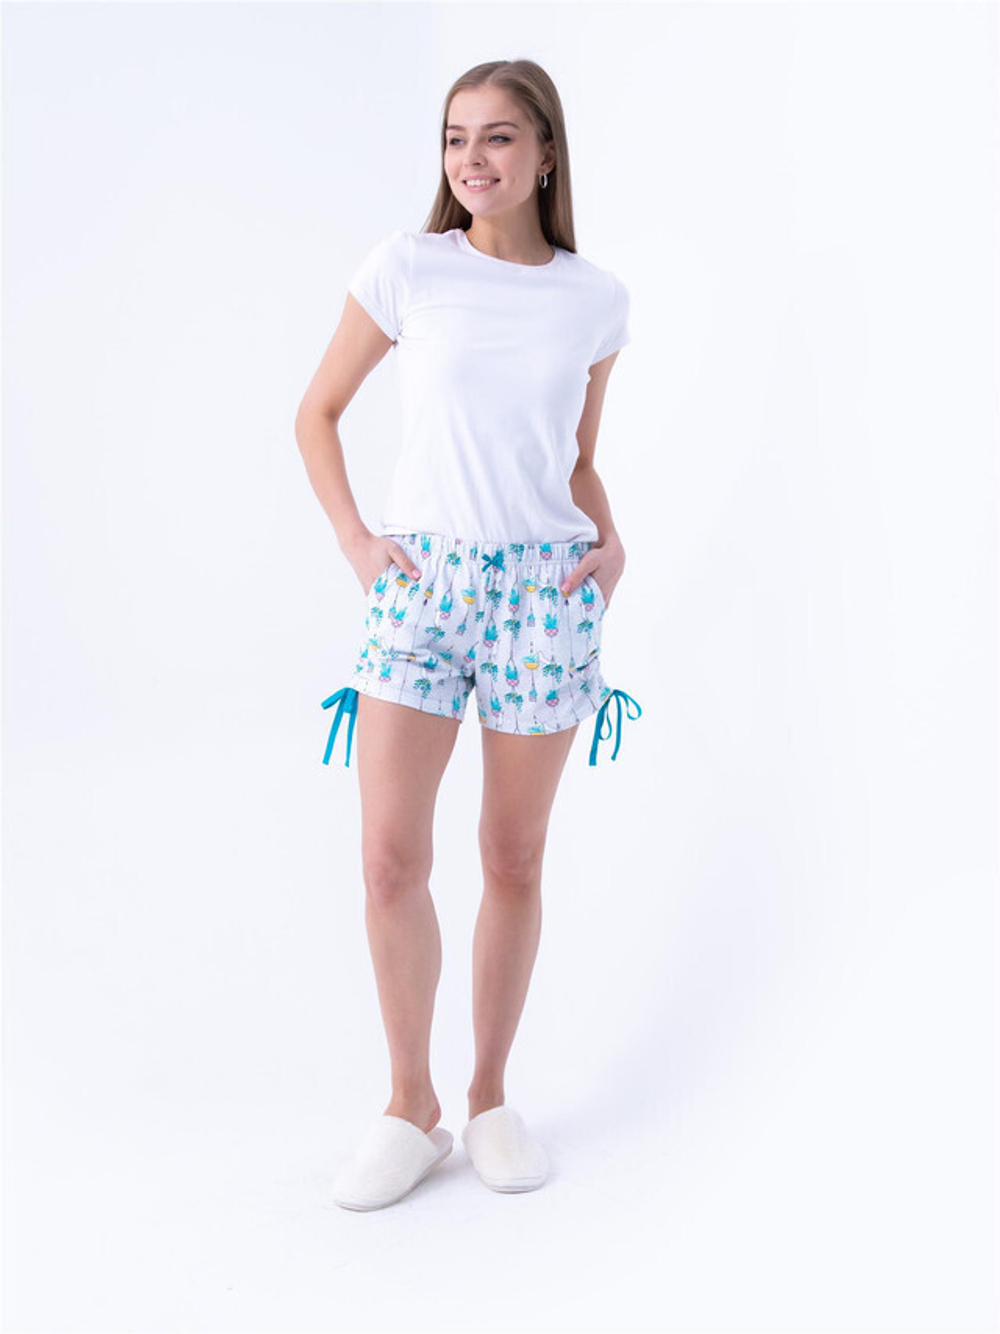 RELAX MODE / Шорты домашние пижамные короткие летние хлопок трикотажные - 12016